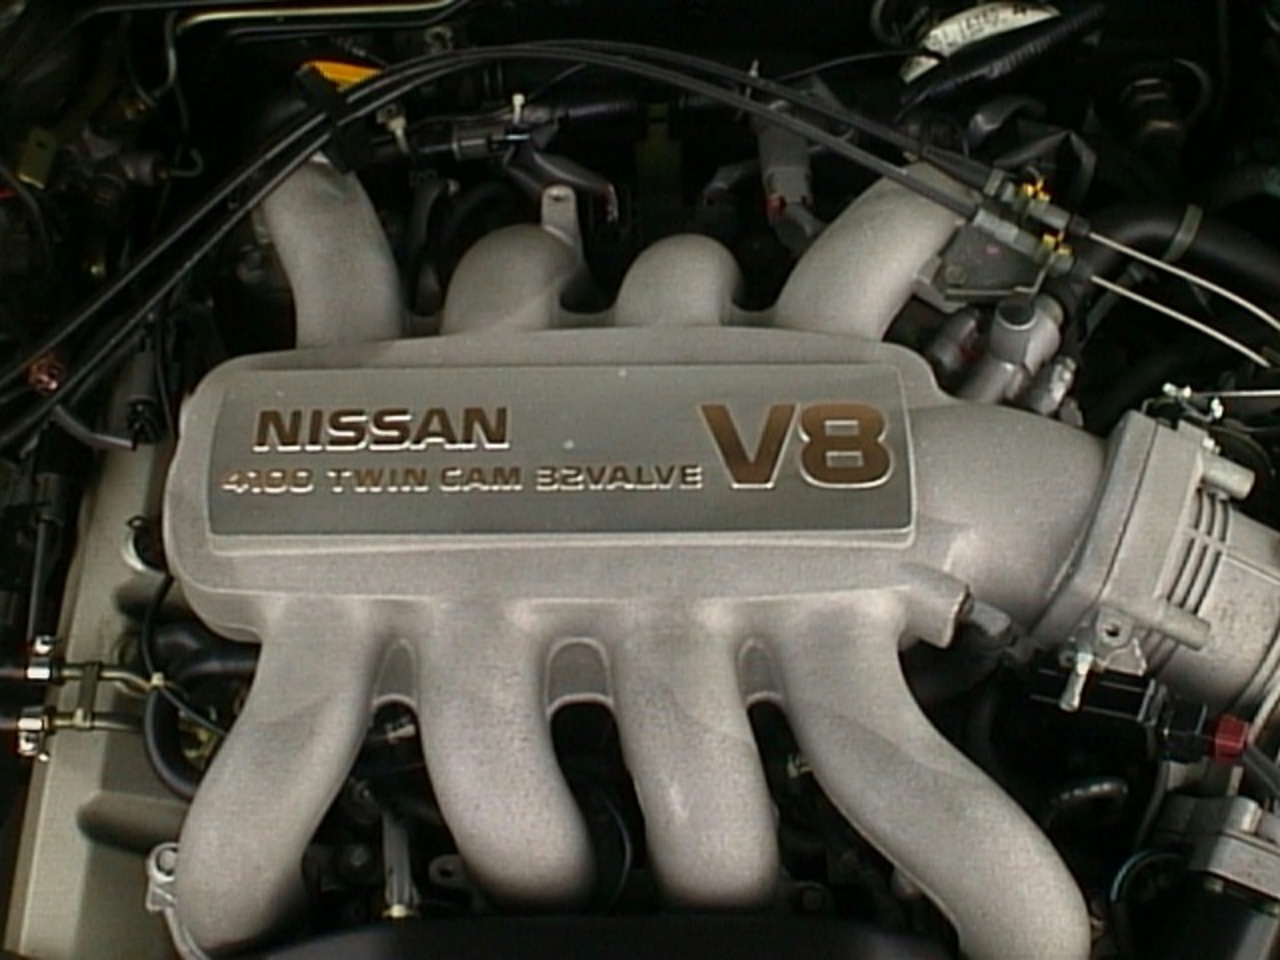 Nissan leopard j.ferie